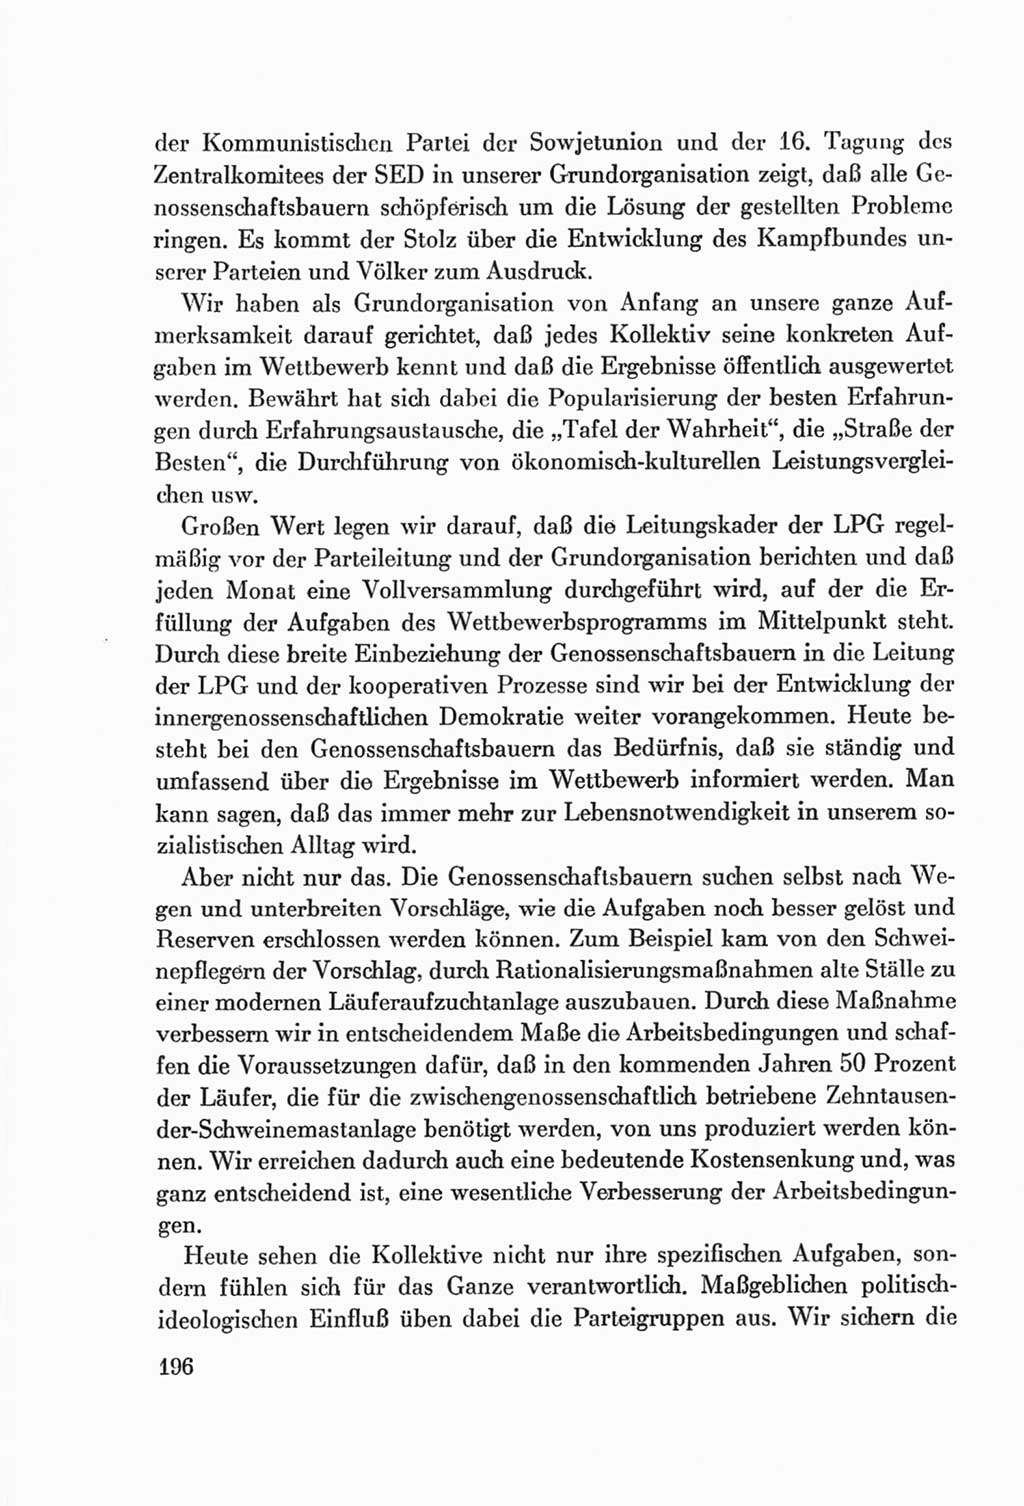 Protokoll der Verhandlungen des Ⅷ. Parteitages der Sozialistischen Einheitspartei Deutschlands (SED) [Deutsche Demokratische Republik (DDR)] 1971, Band 1, Seite 196 (Prot. Verh. Ⅷ. PT SED DDR 1971, Bd. 1, S. 196)